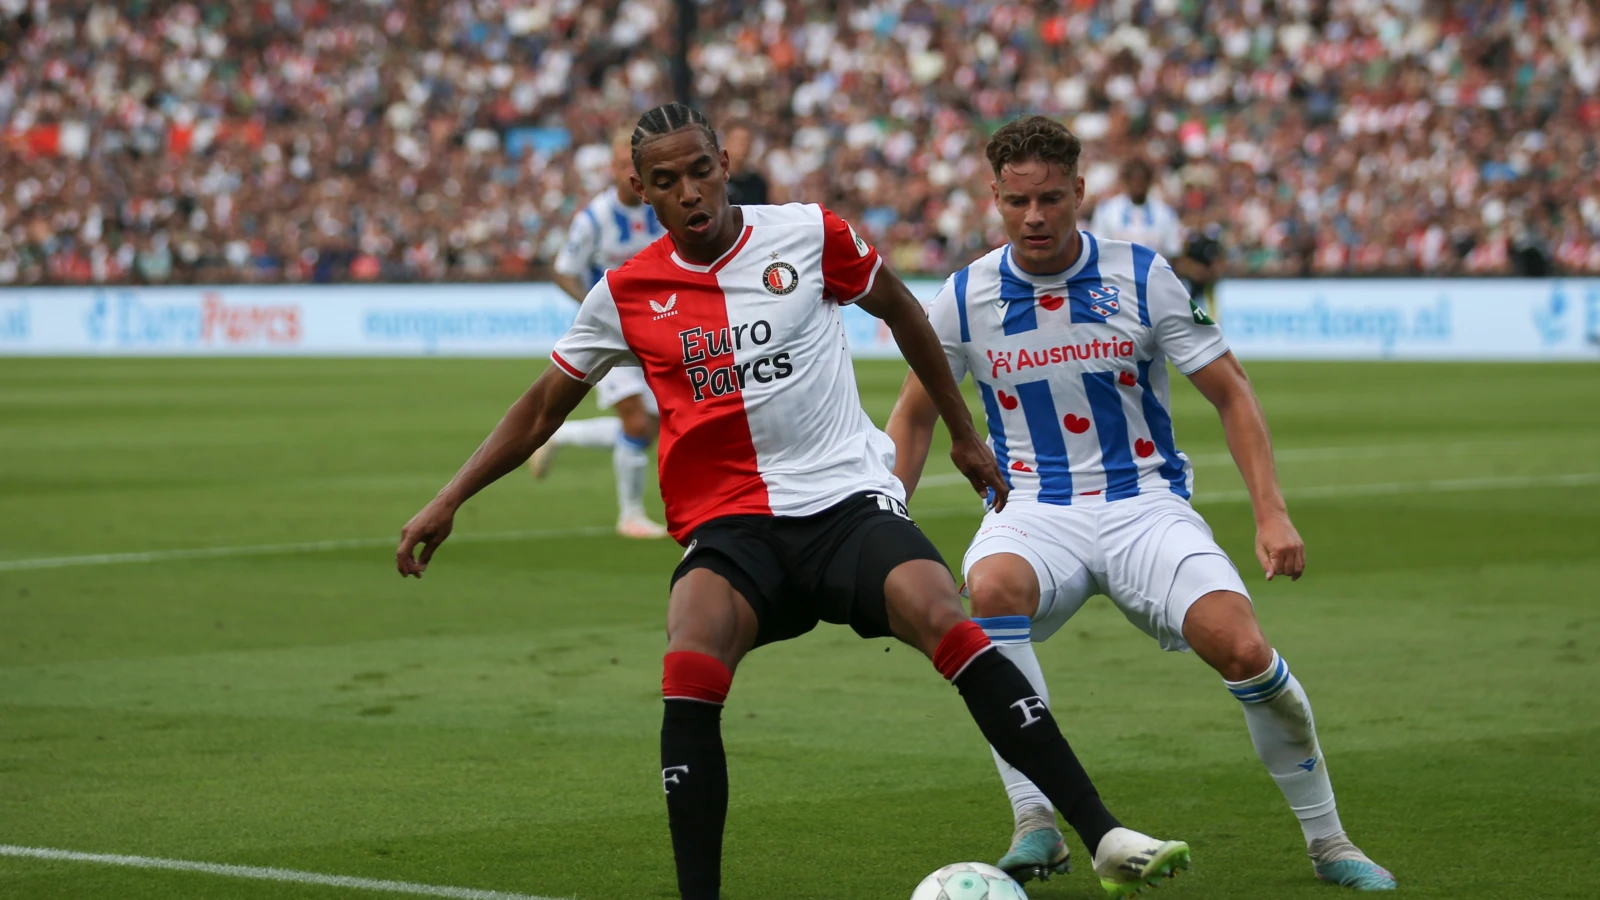 LIVE | Feyenoord - sc Heerenveen 6-1 | Einde wedstrijd